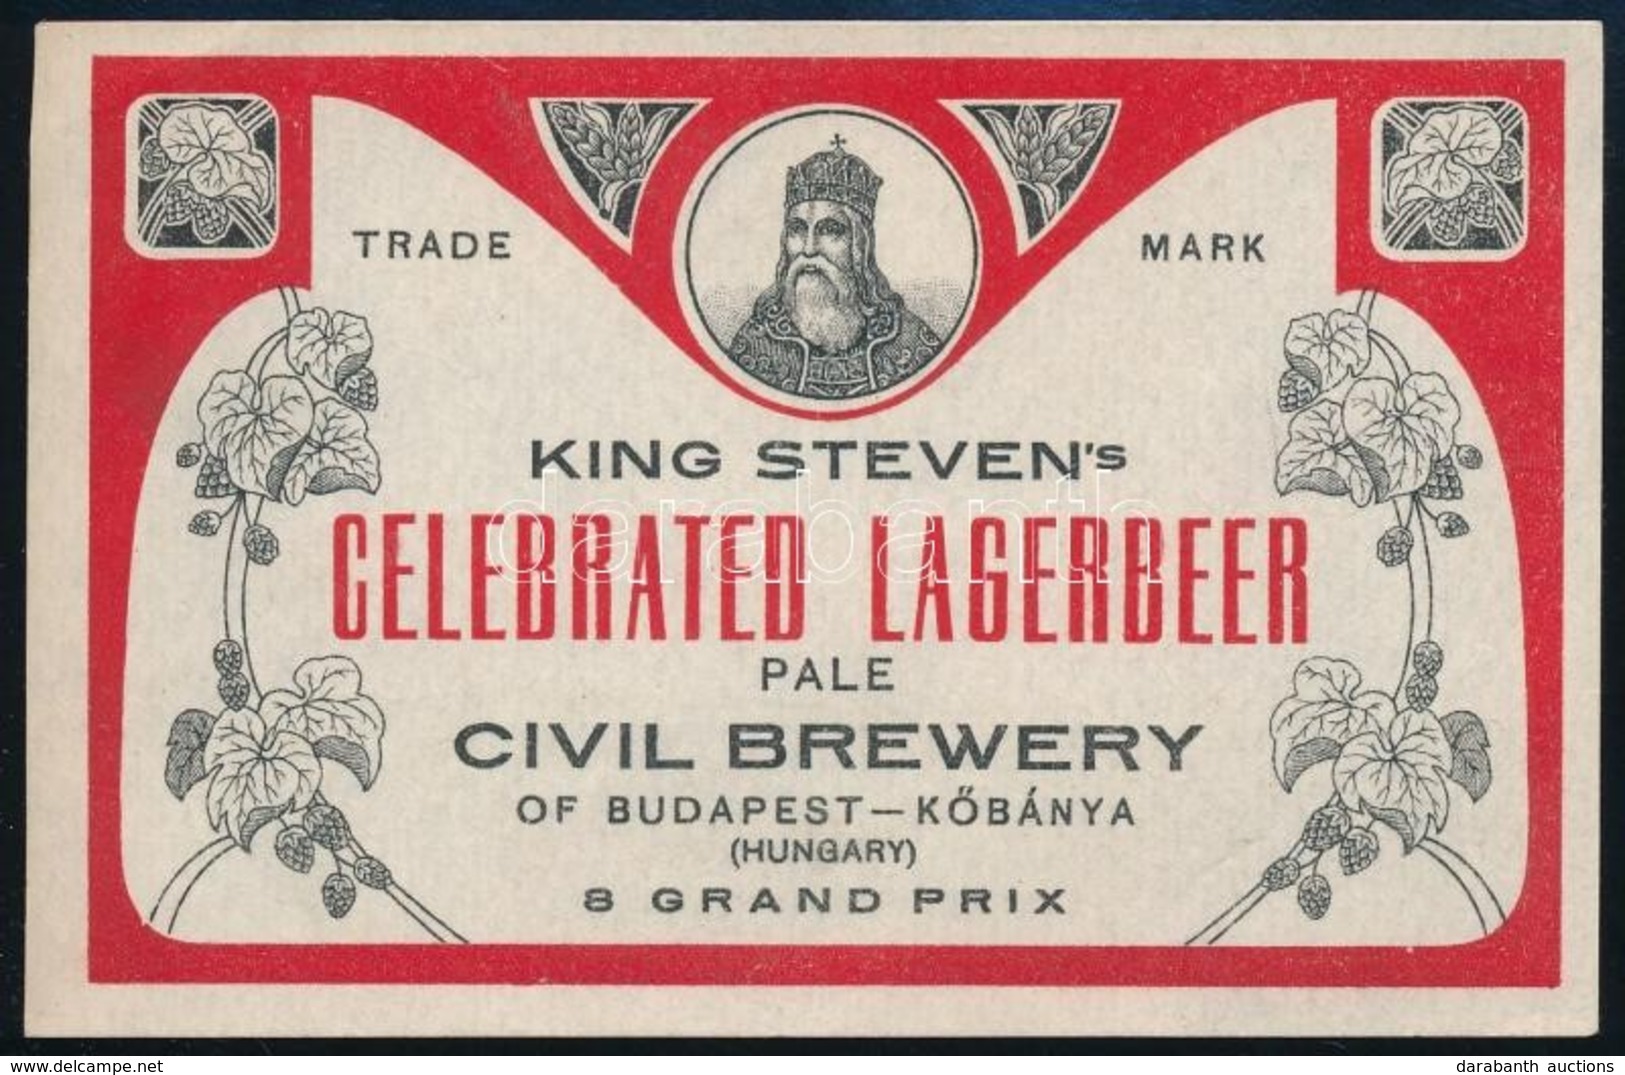 Cca 1920 Szent István Láger, Exportra Készült Sörcímke, Polgári Serfőzde, 7,5x12 Cm / Civil Brewery, King Steven's Celeb - Advertising